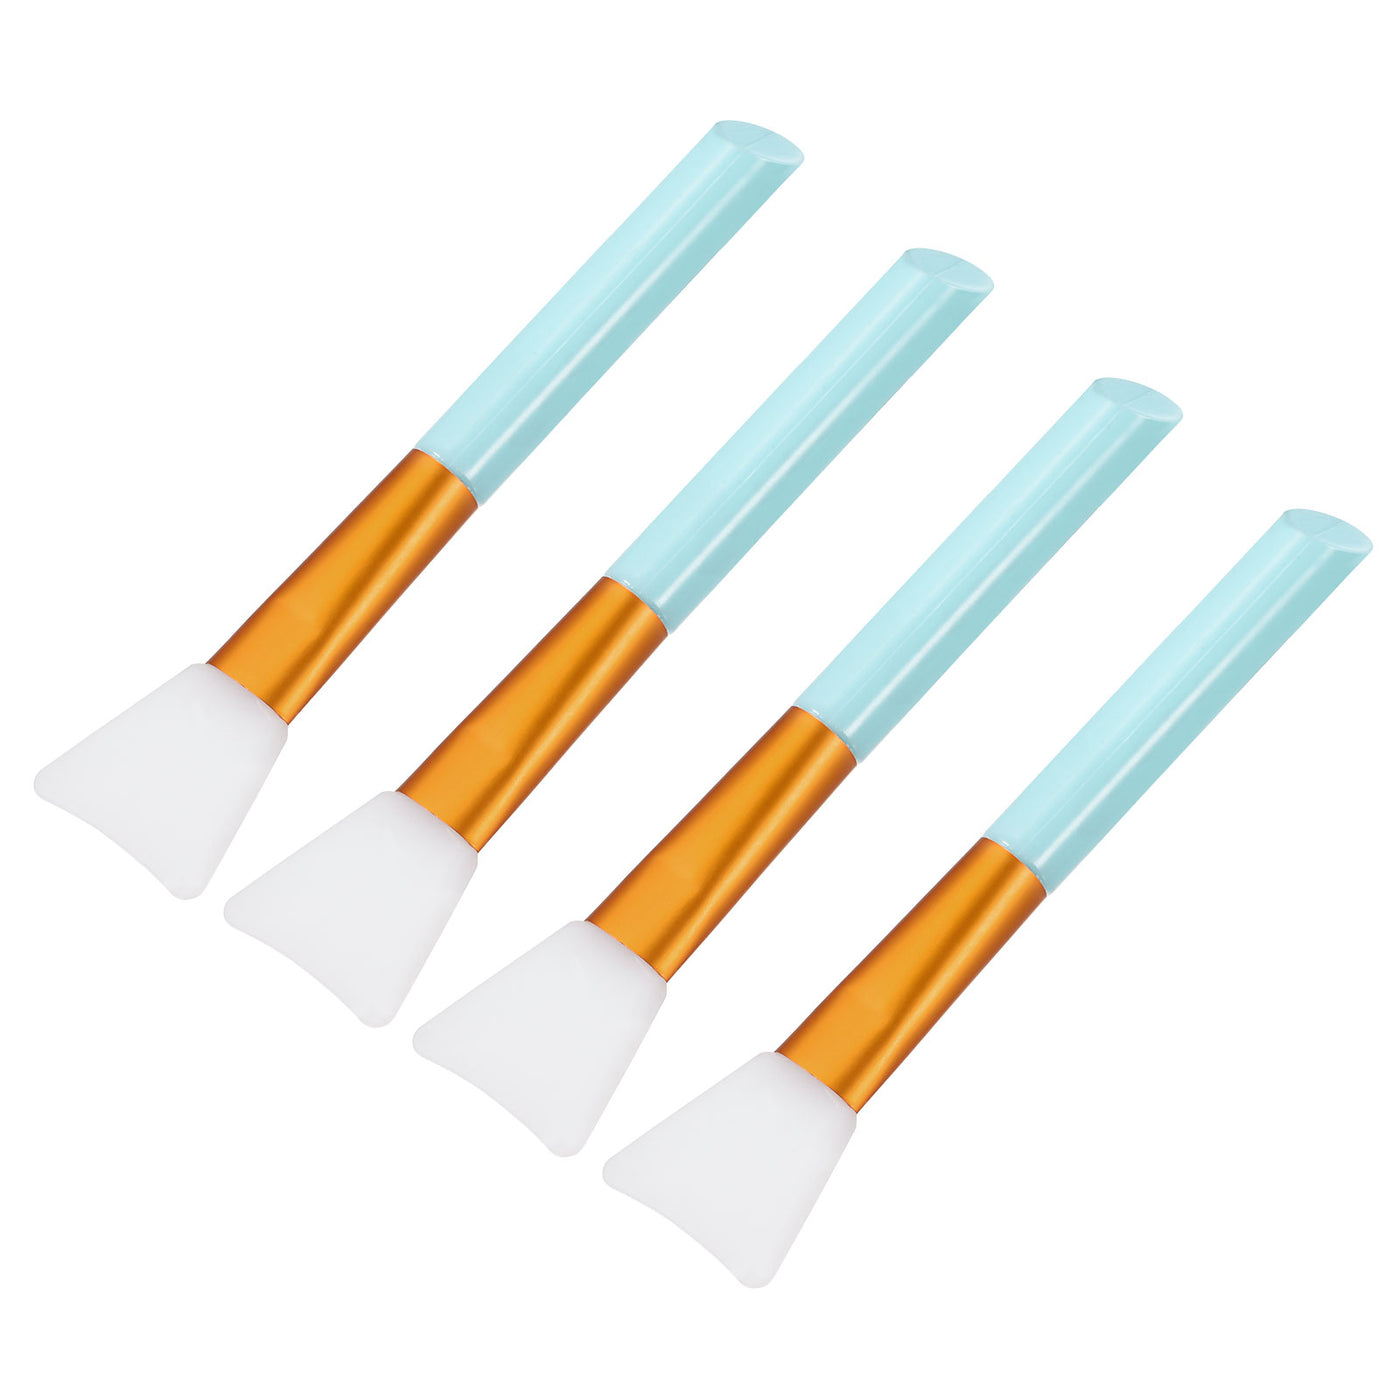 Harfington Silicone Epoxy Brushes Blue Applicator DIY Brush for Making Epoxy Tumbler, Pack of 4